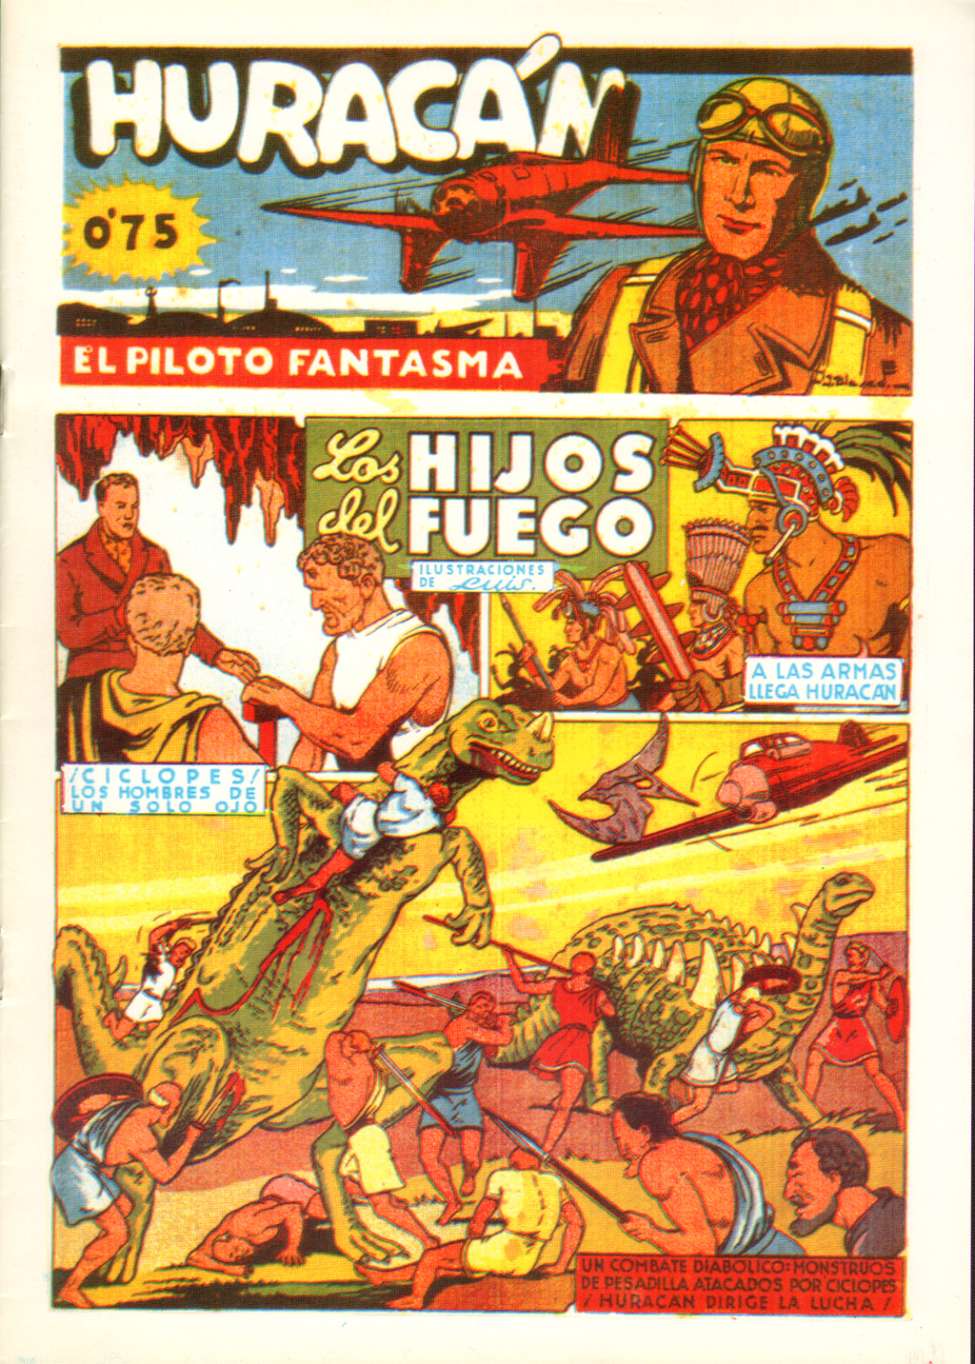 Book Cover For Huracan El Piloto Fantasma 9 - Los Hijos del Fuego